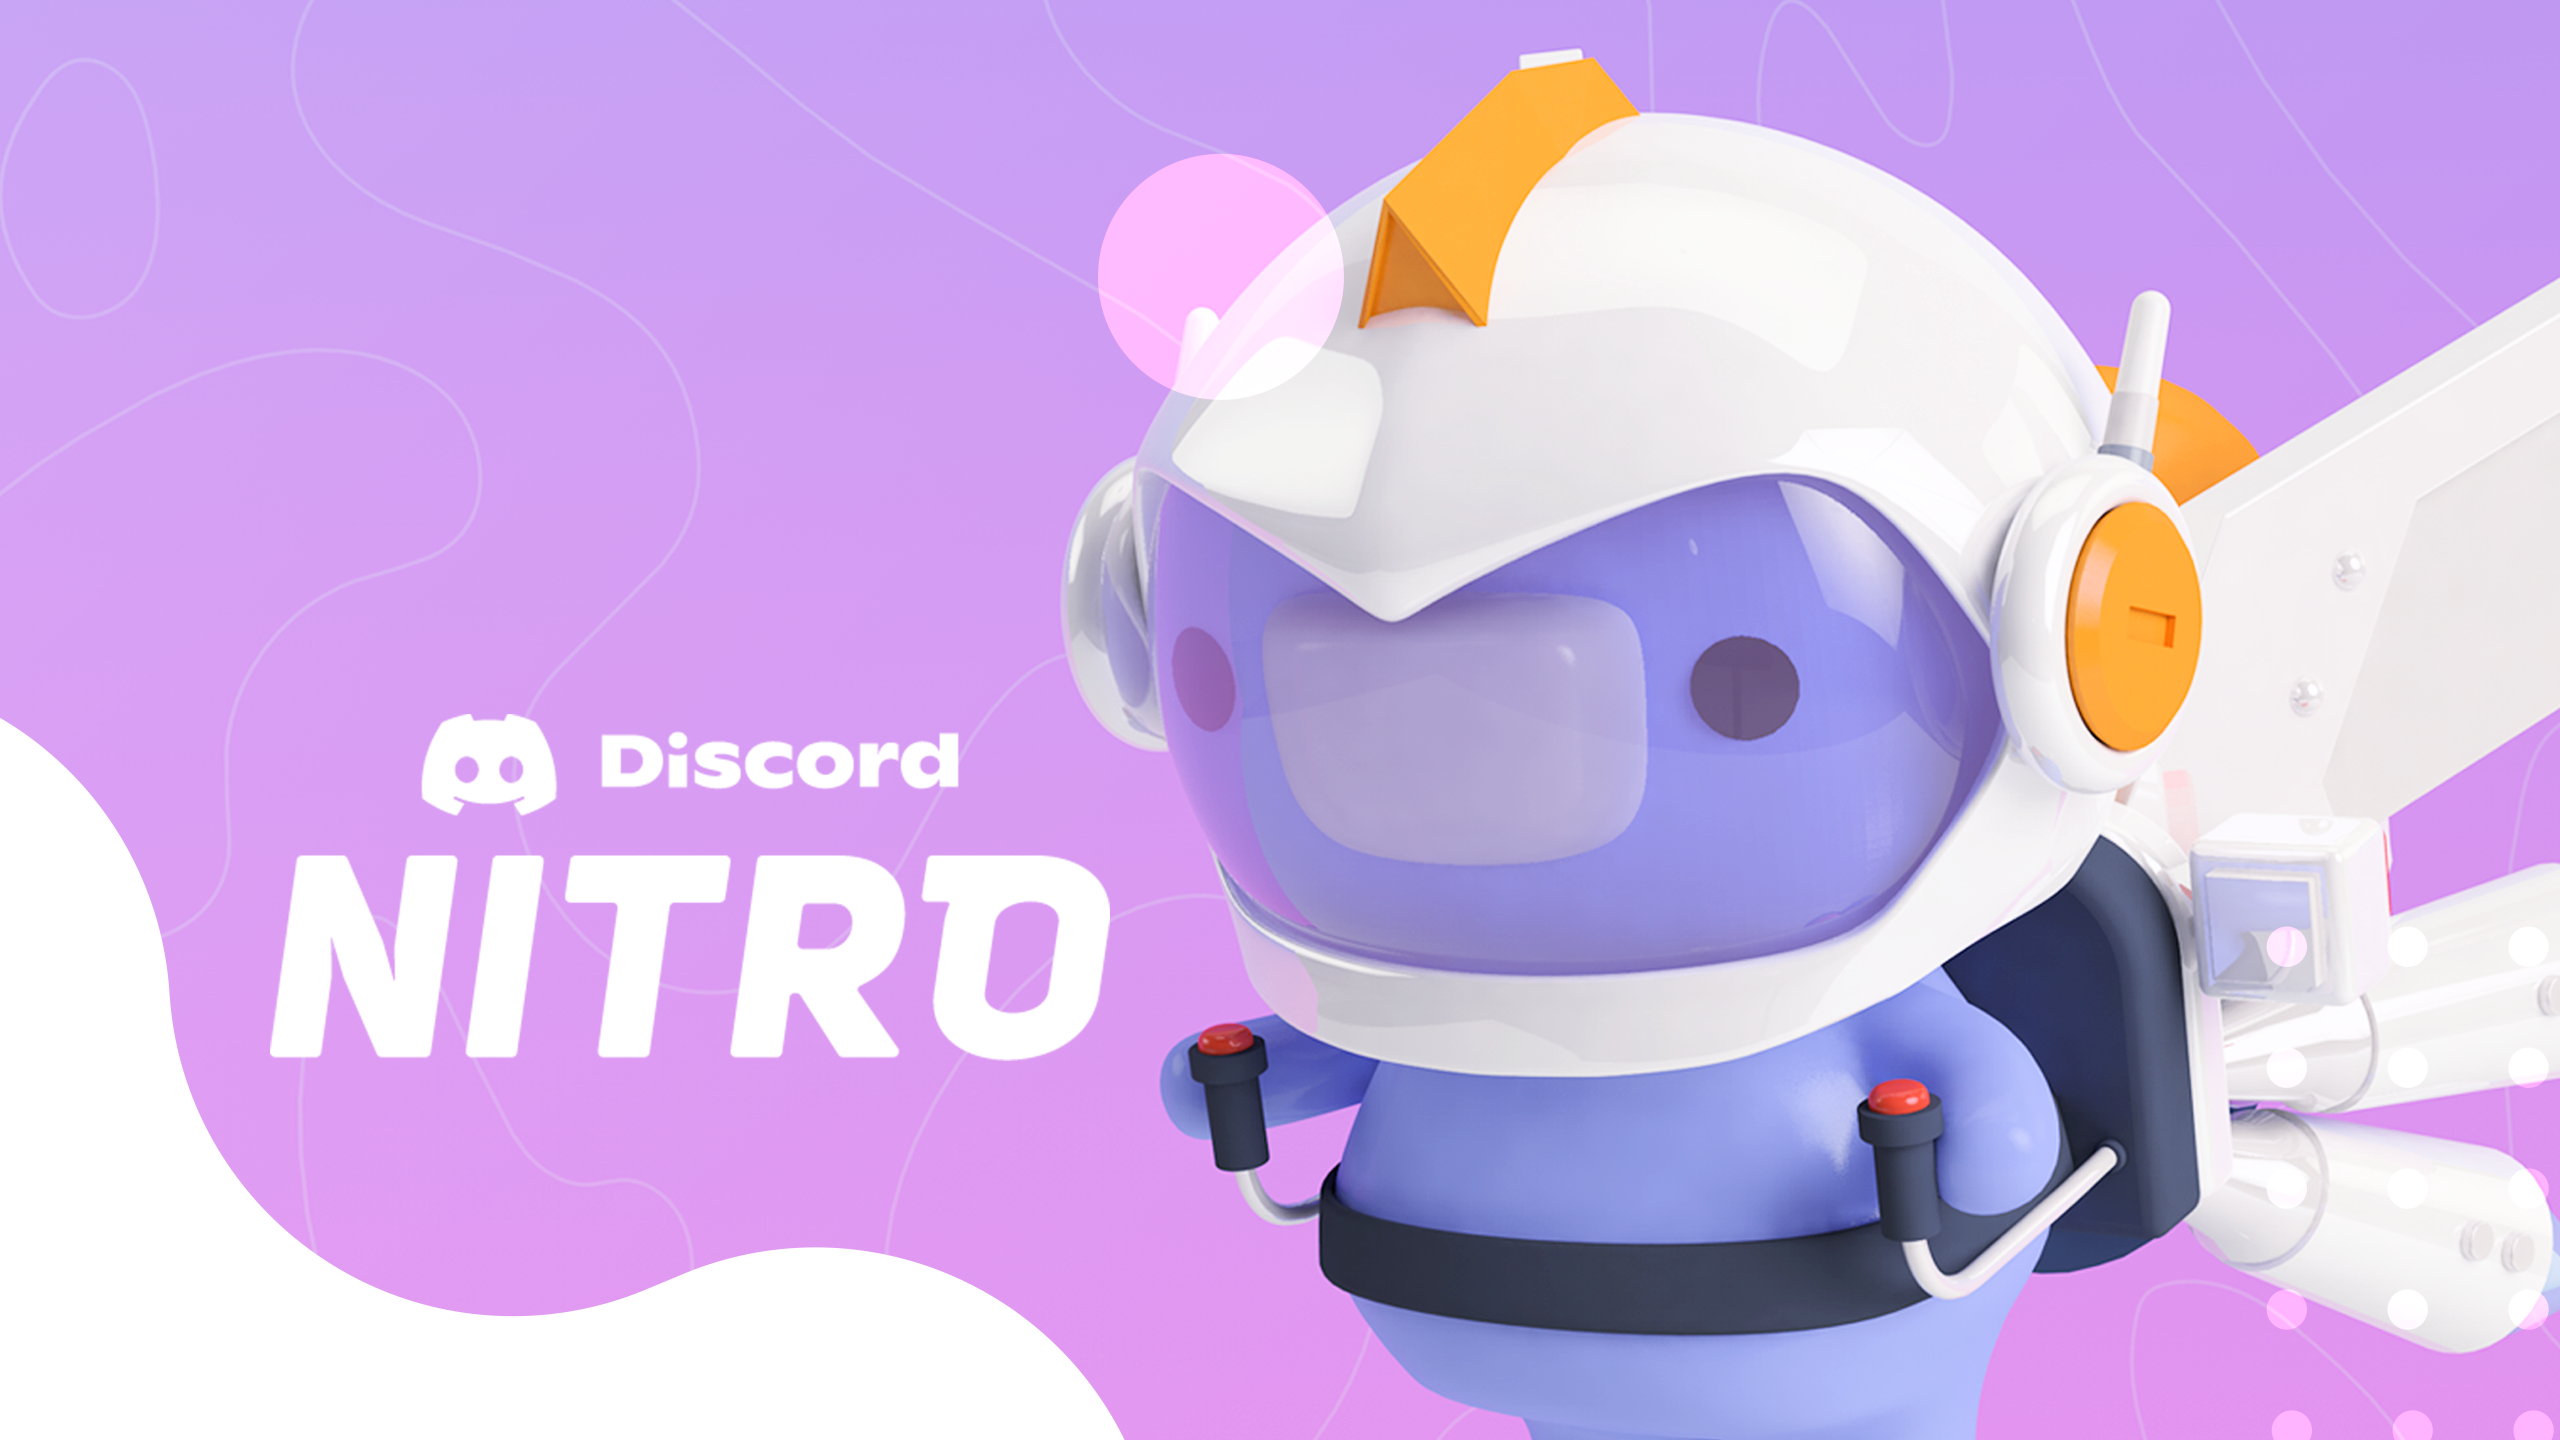 Discord disponible sur Epic Games, 3 mois de Nitro offerts pour les nouveaux utilisateurs ! image de couverture